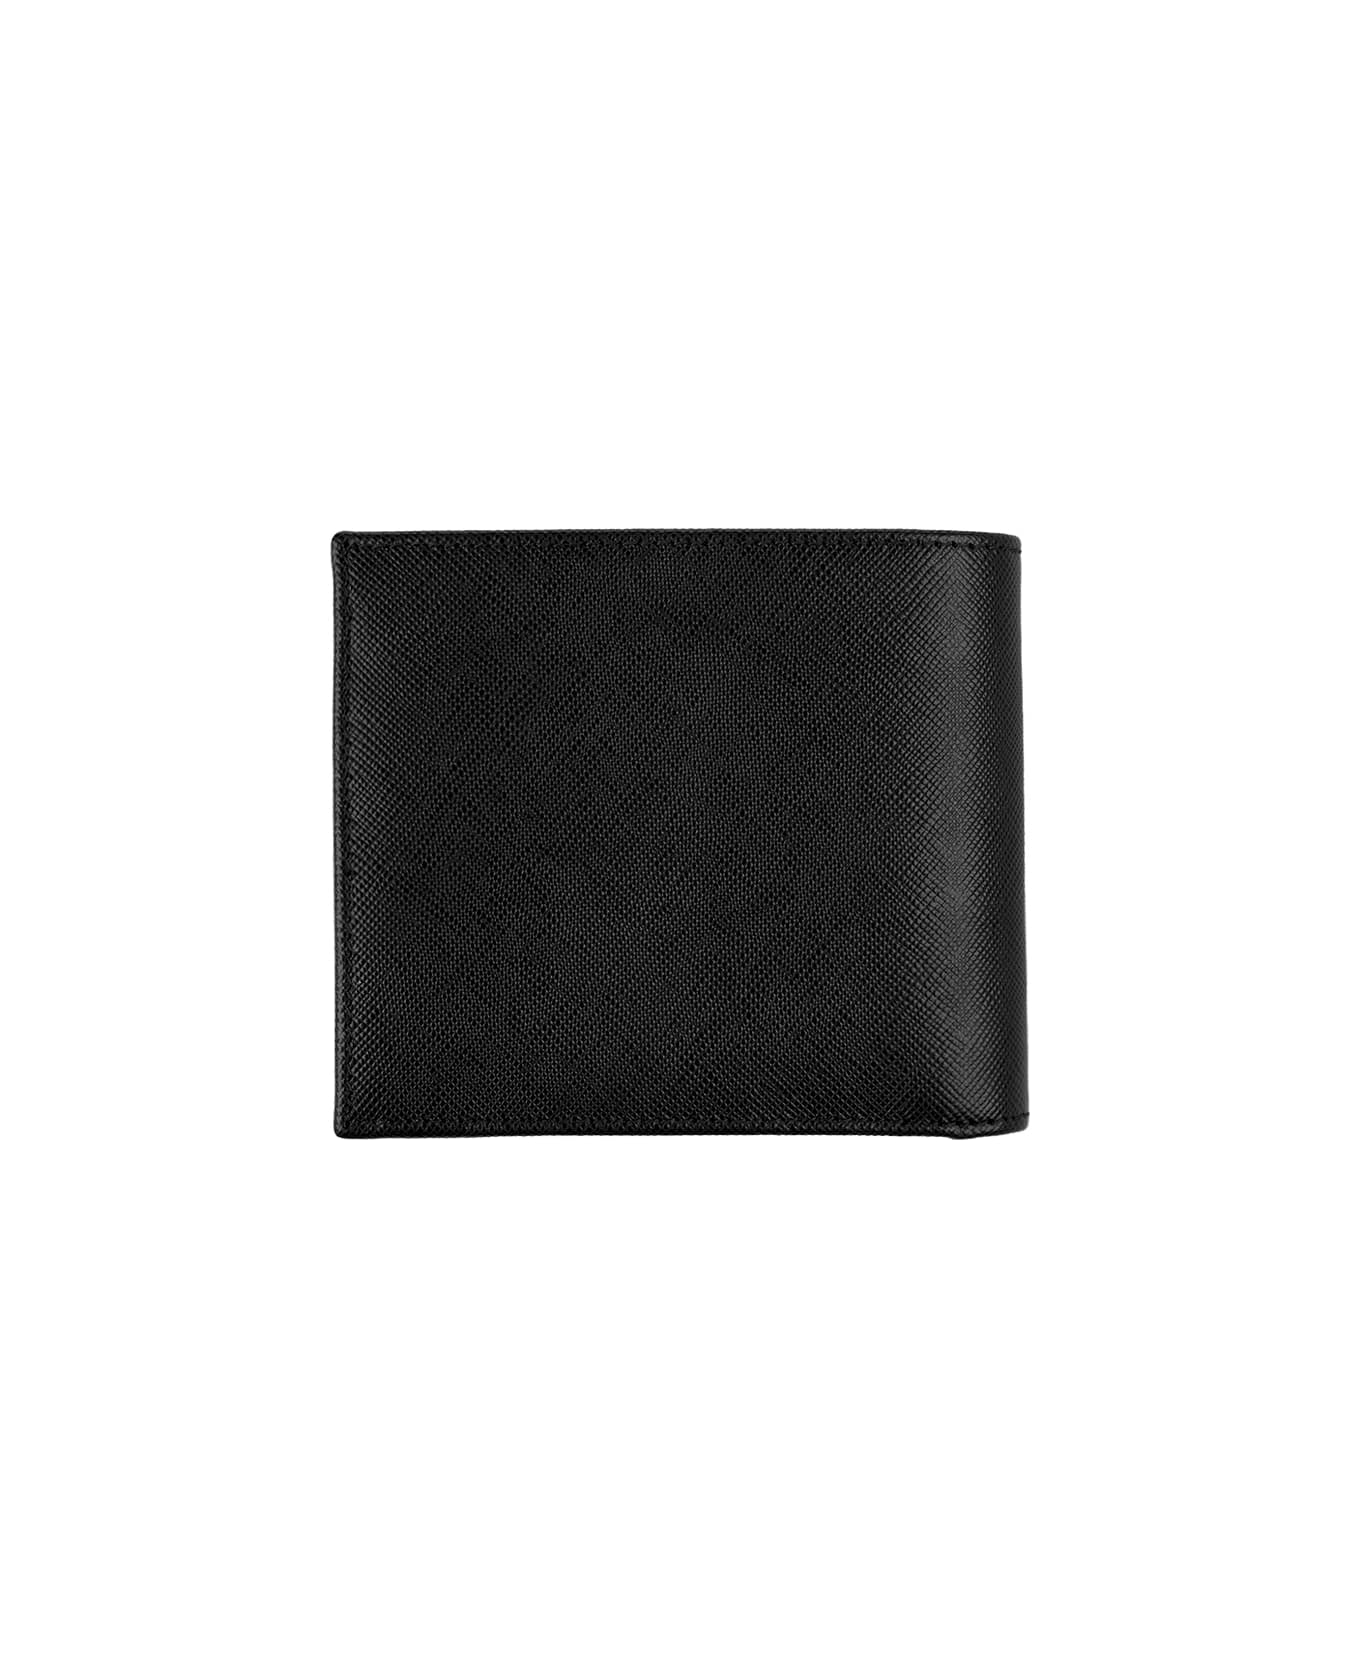 Kiton Black Leather Wallet With Logo - Black